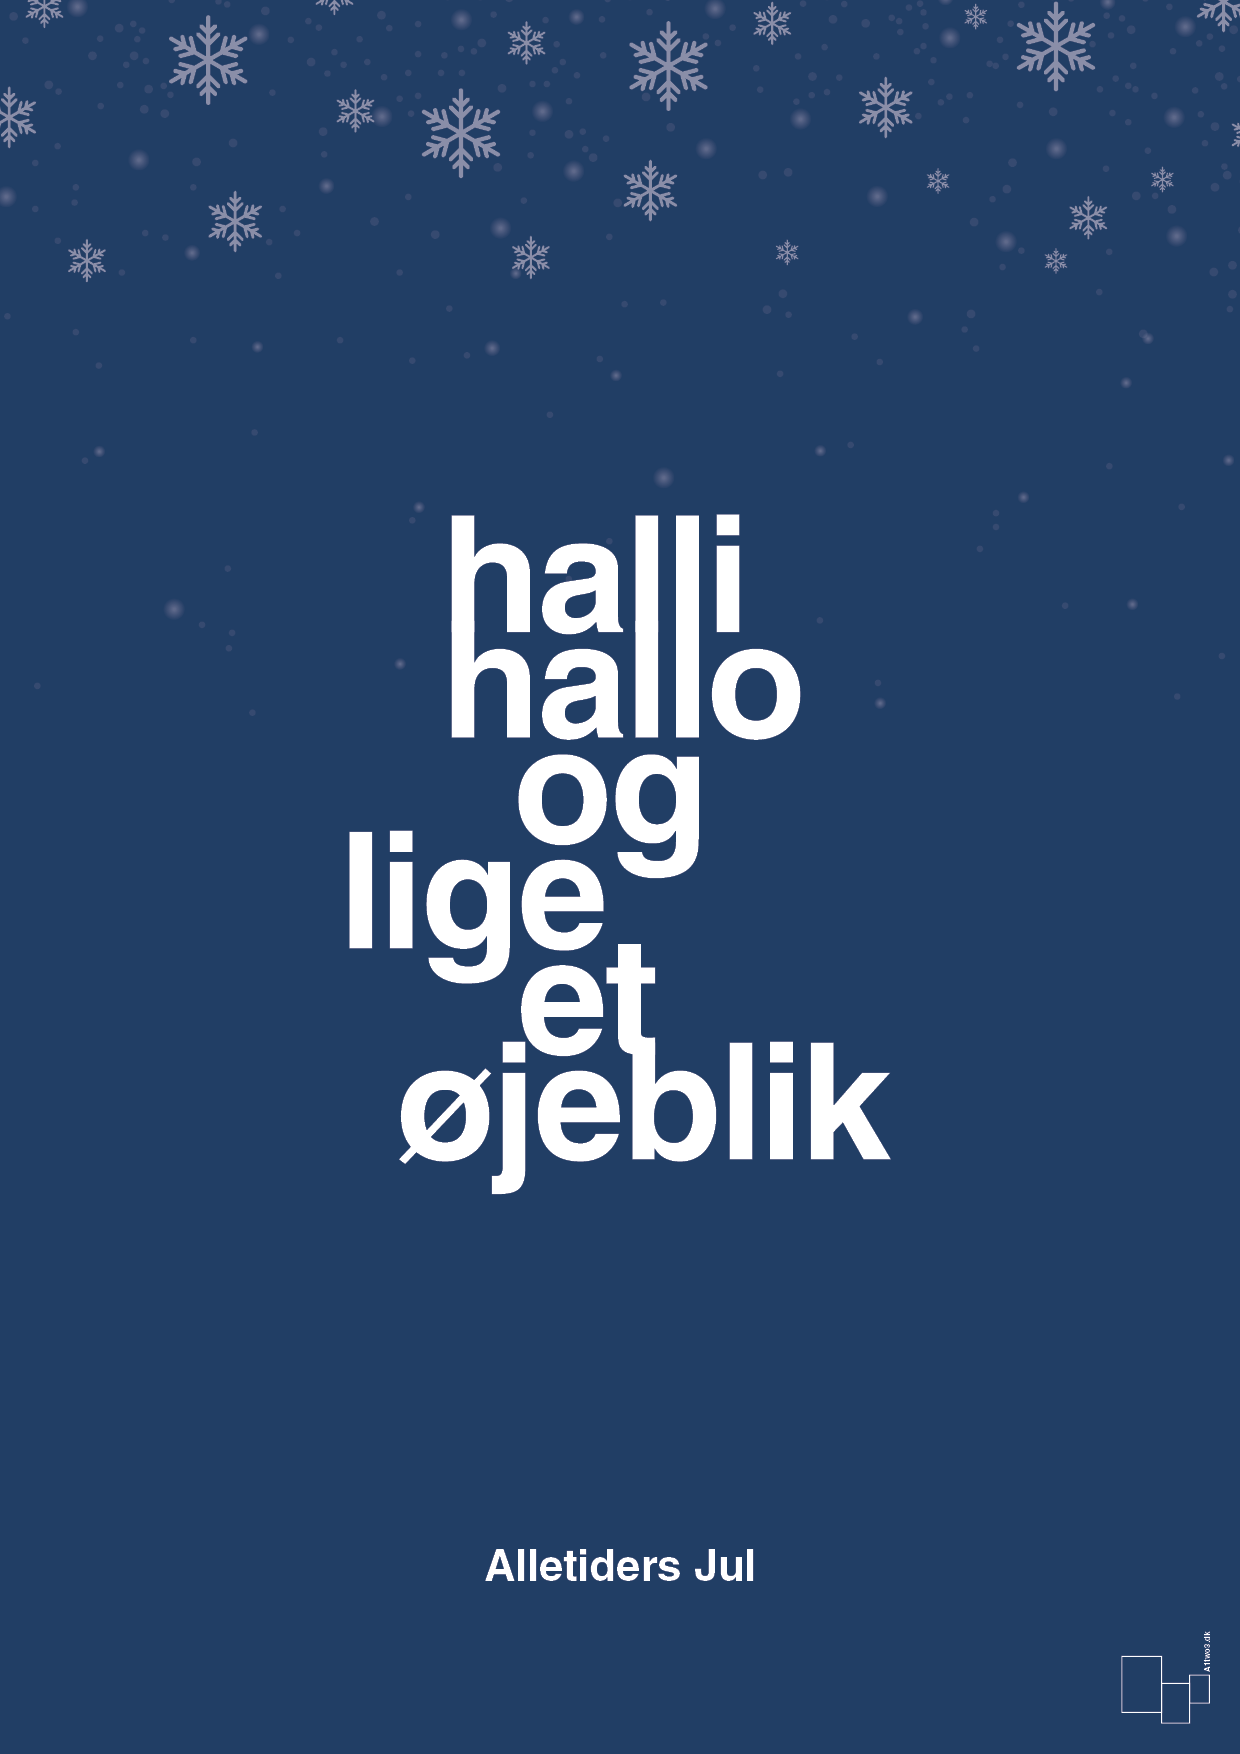 halli hallo og lige et øjeblik - Plakat med Begivenheder i Lapis Blue